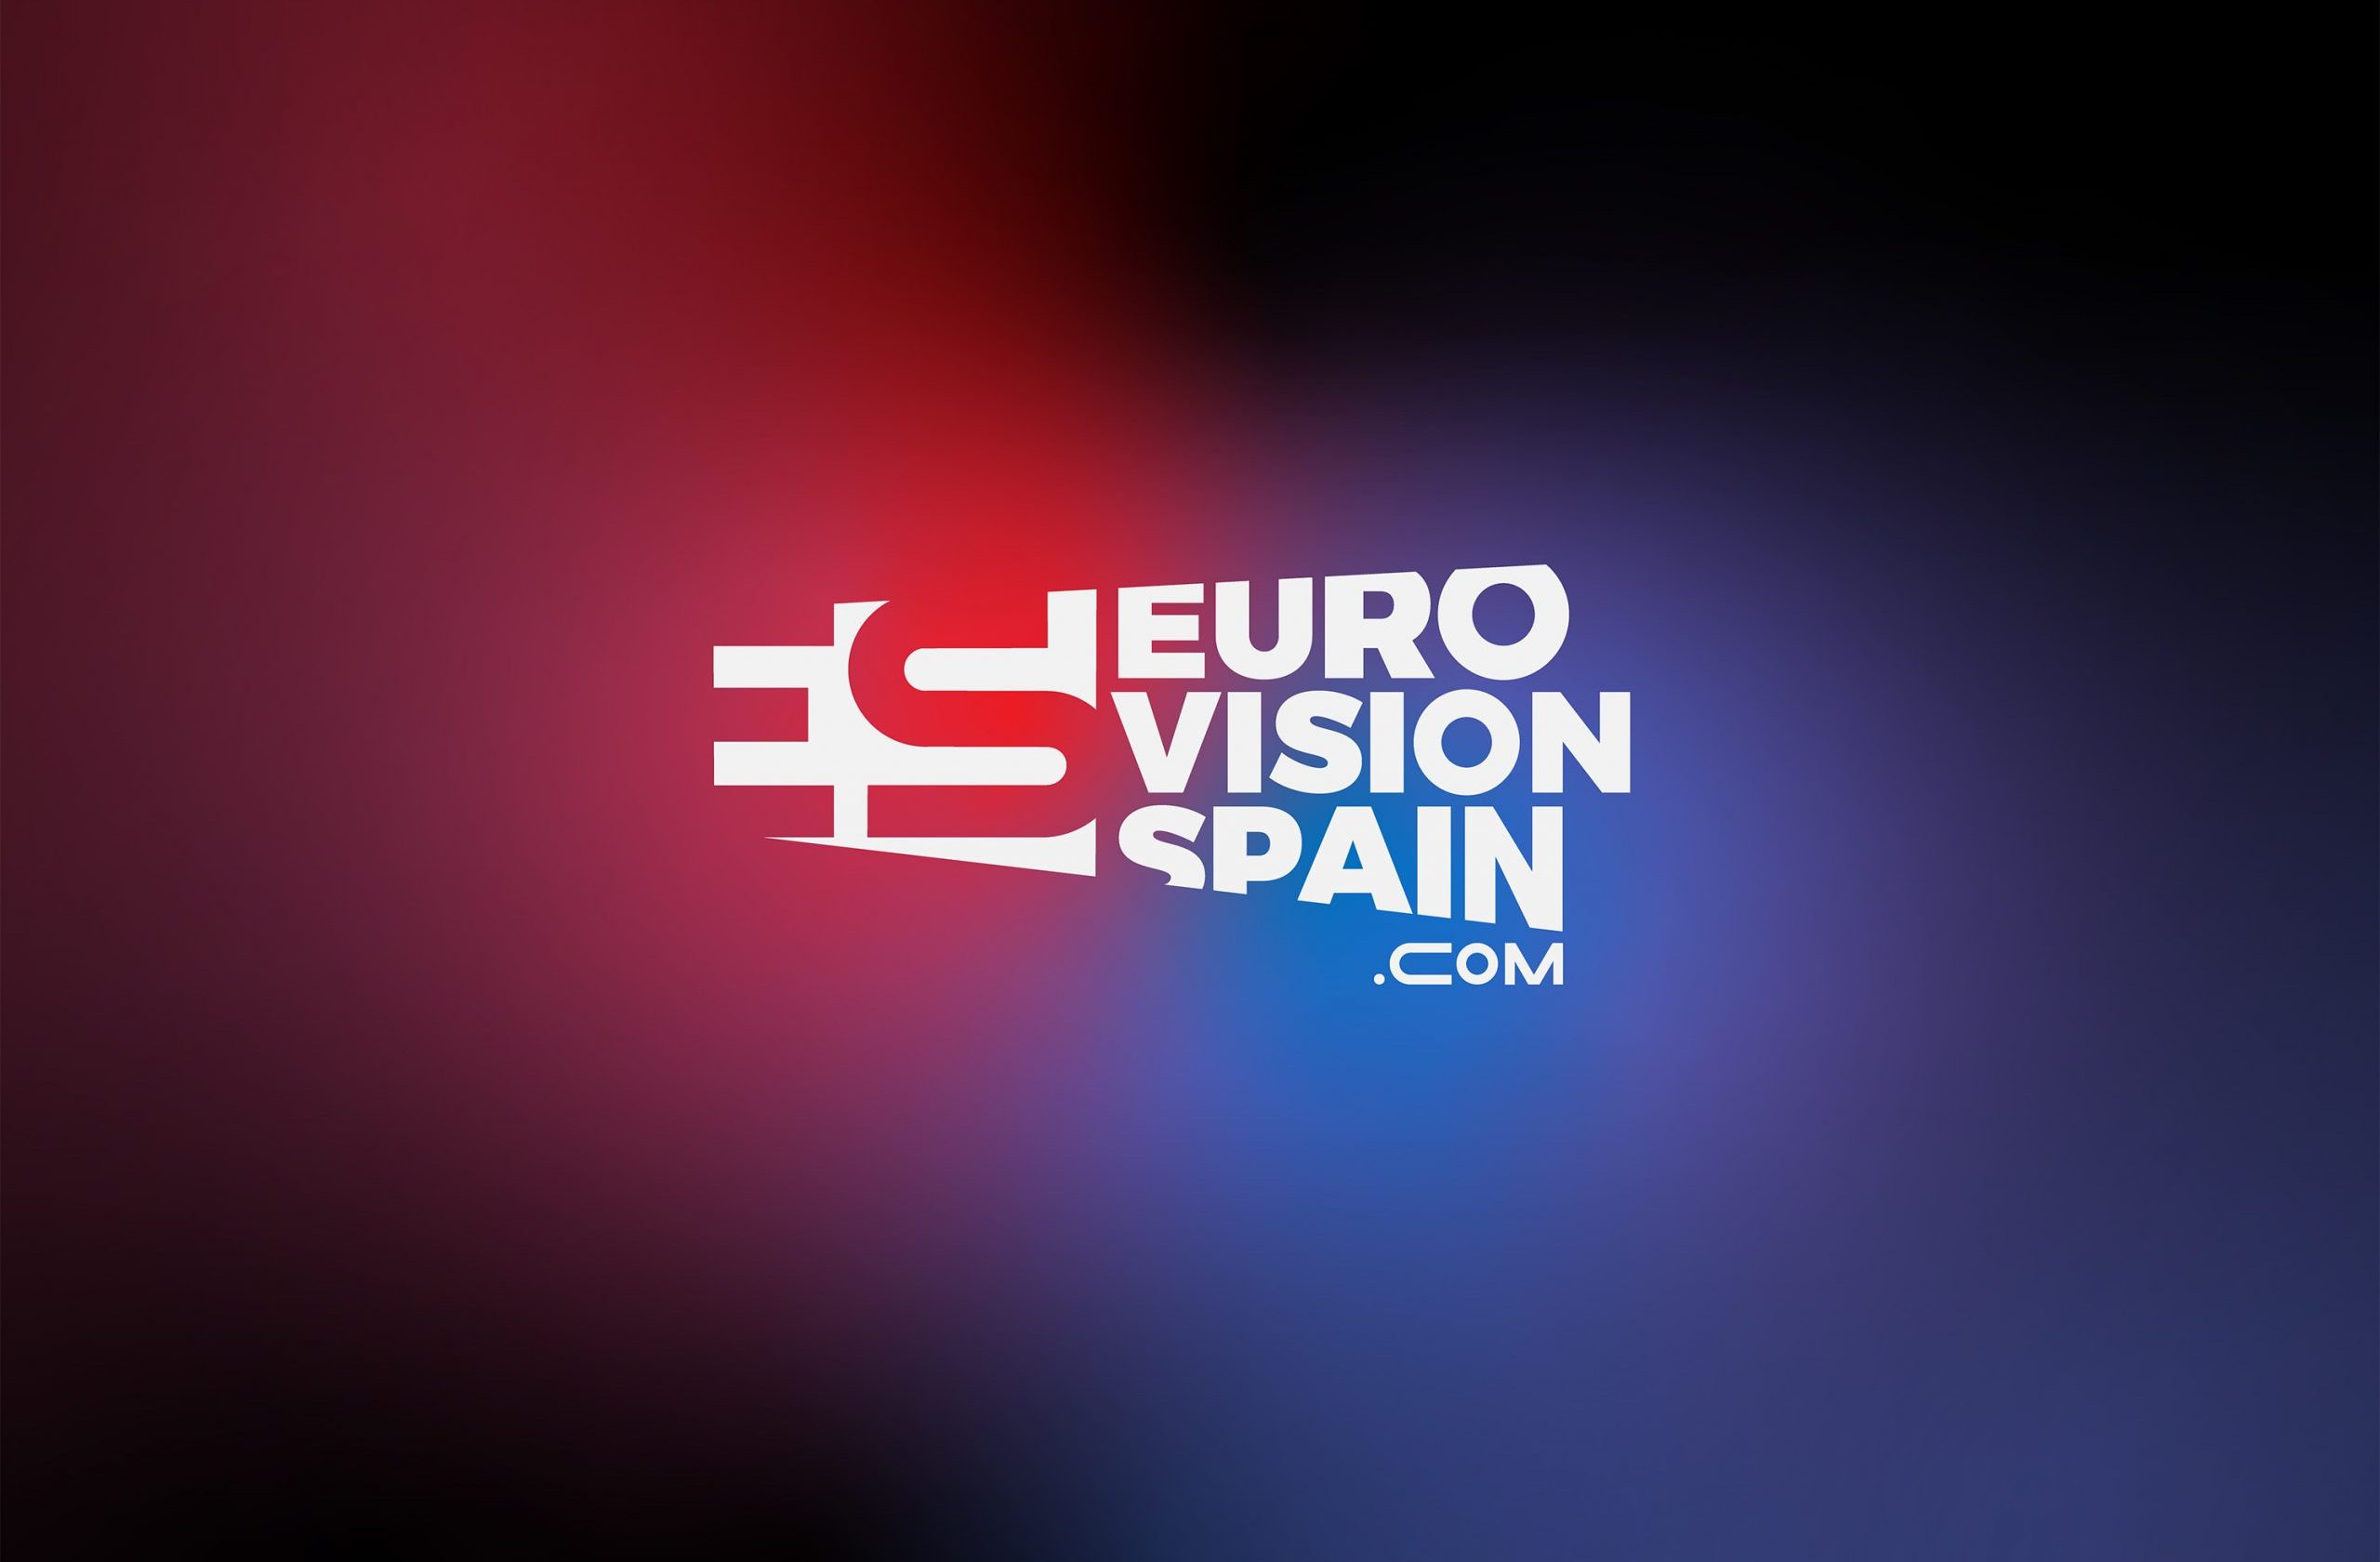 Eurovision-Spain.com imagen corporativa para emprender una nueva etapa eurovision-spain.com